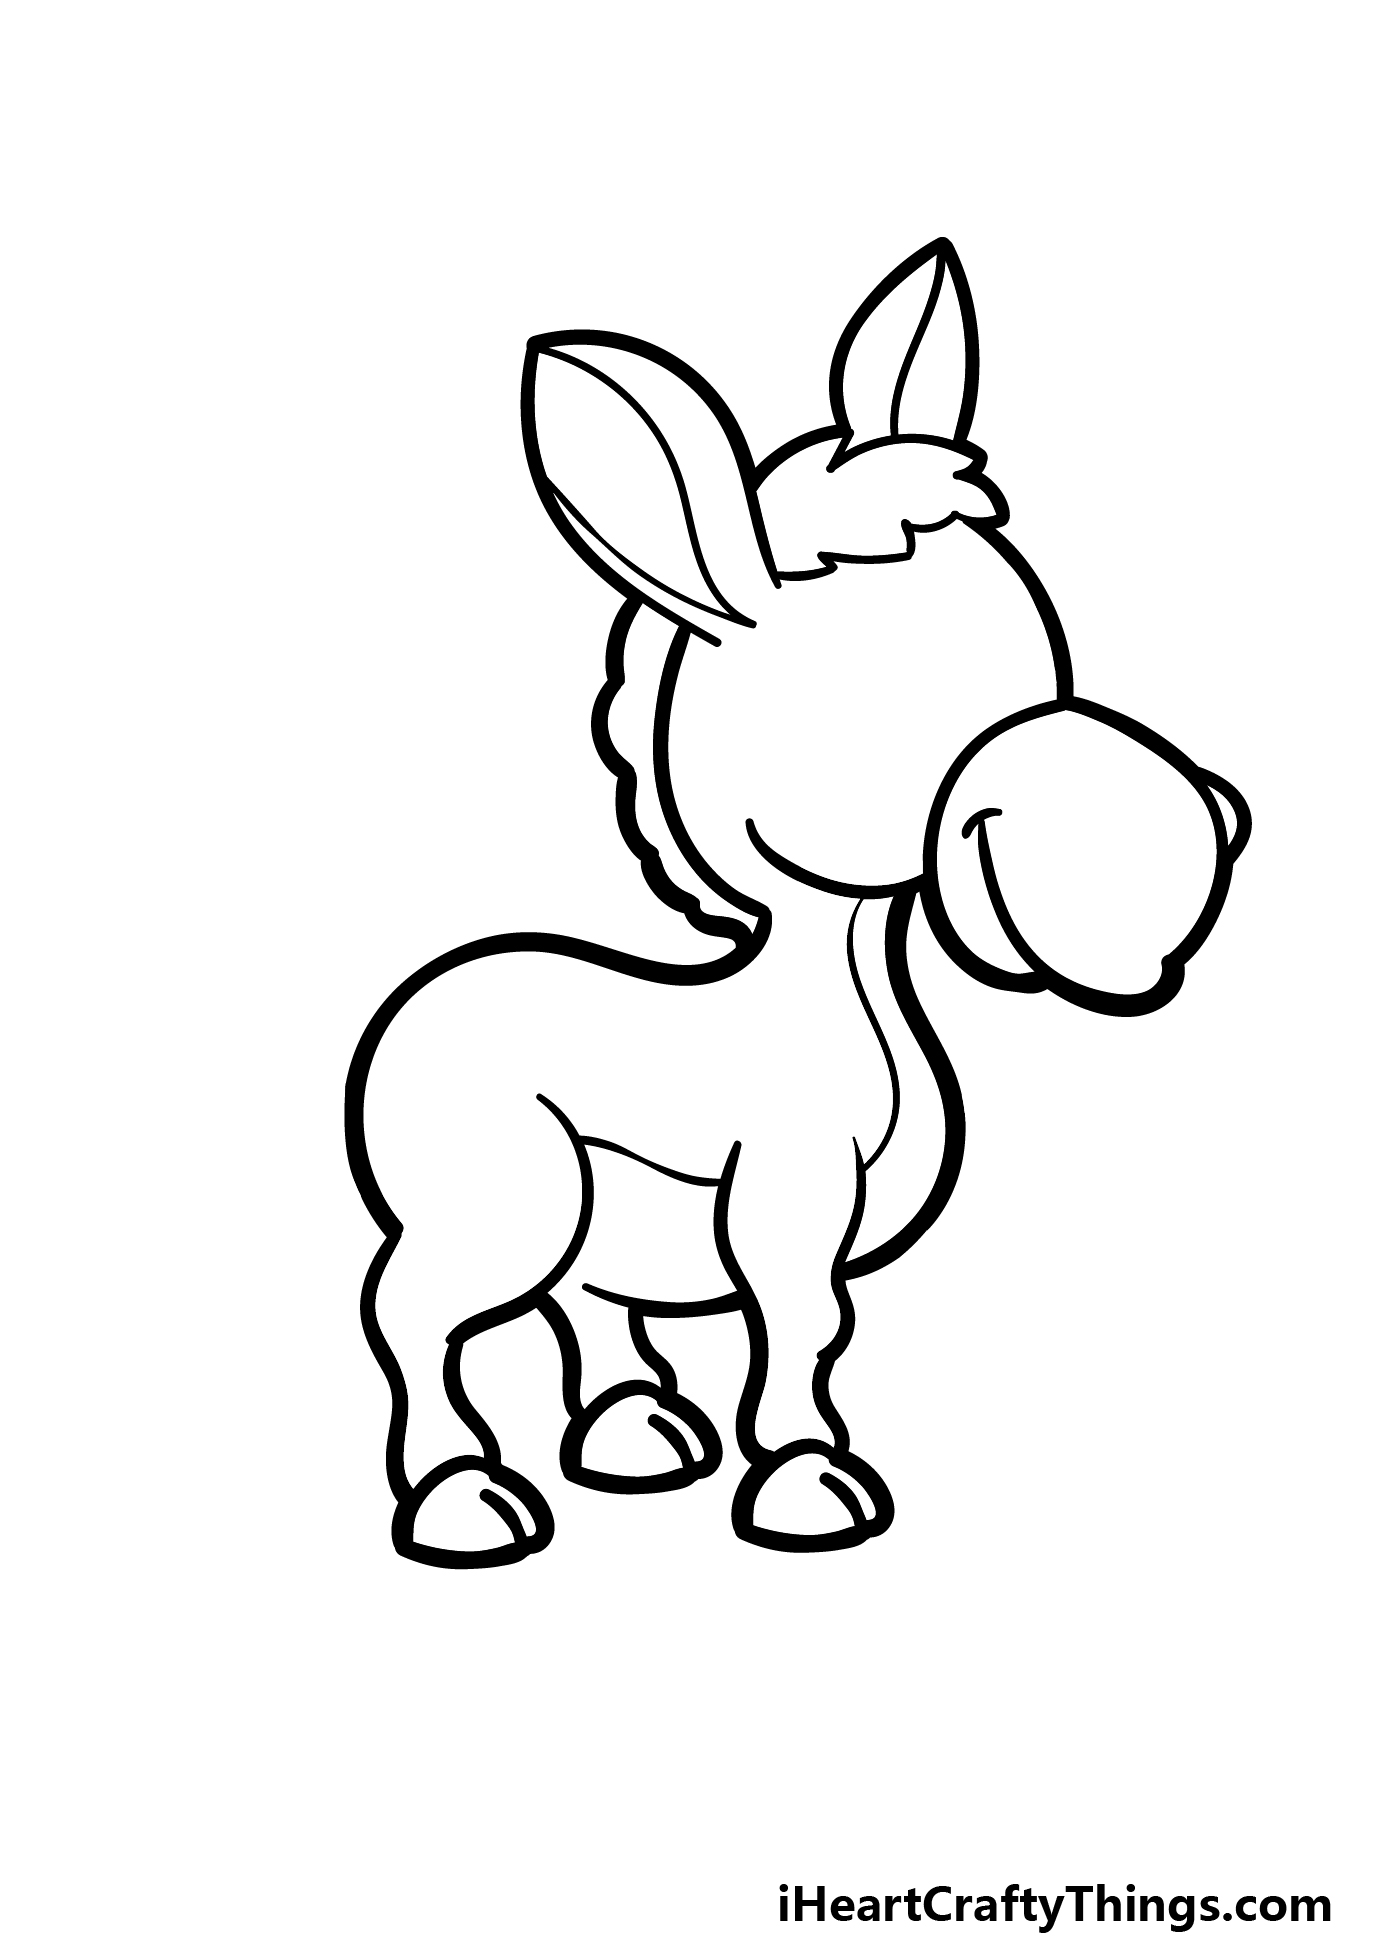 how to draw a cartoon donkey step 4